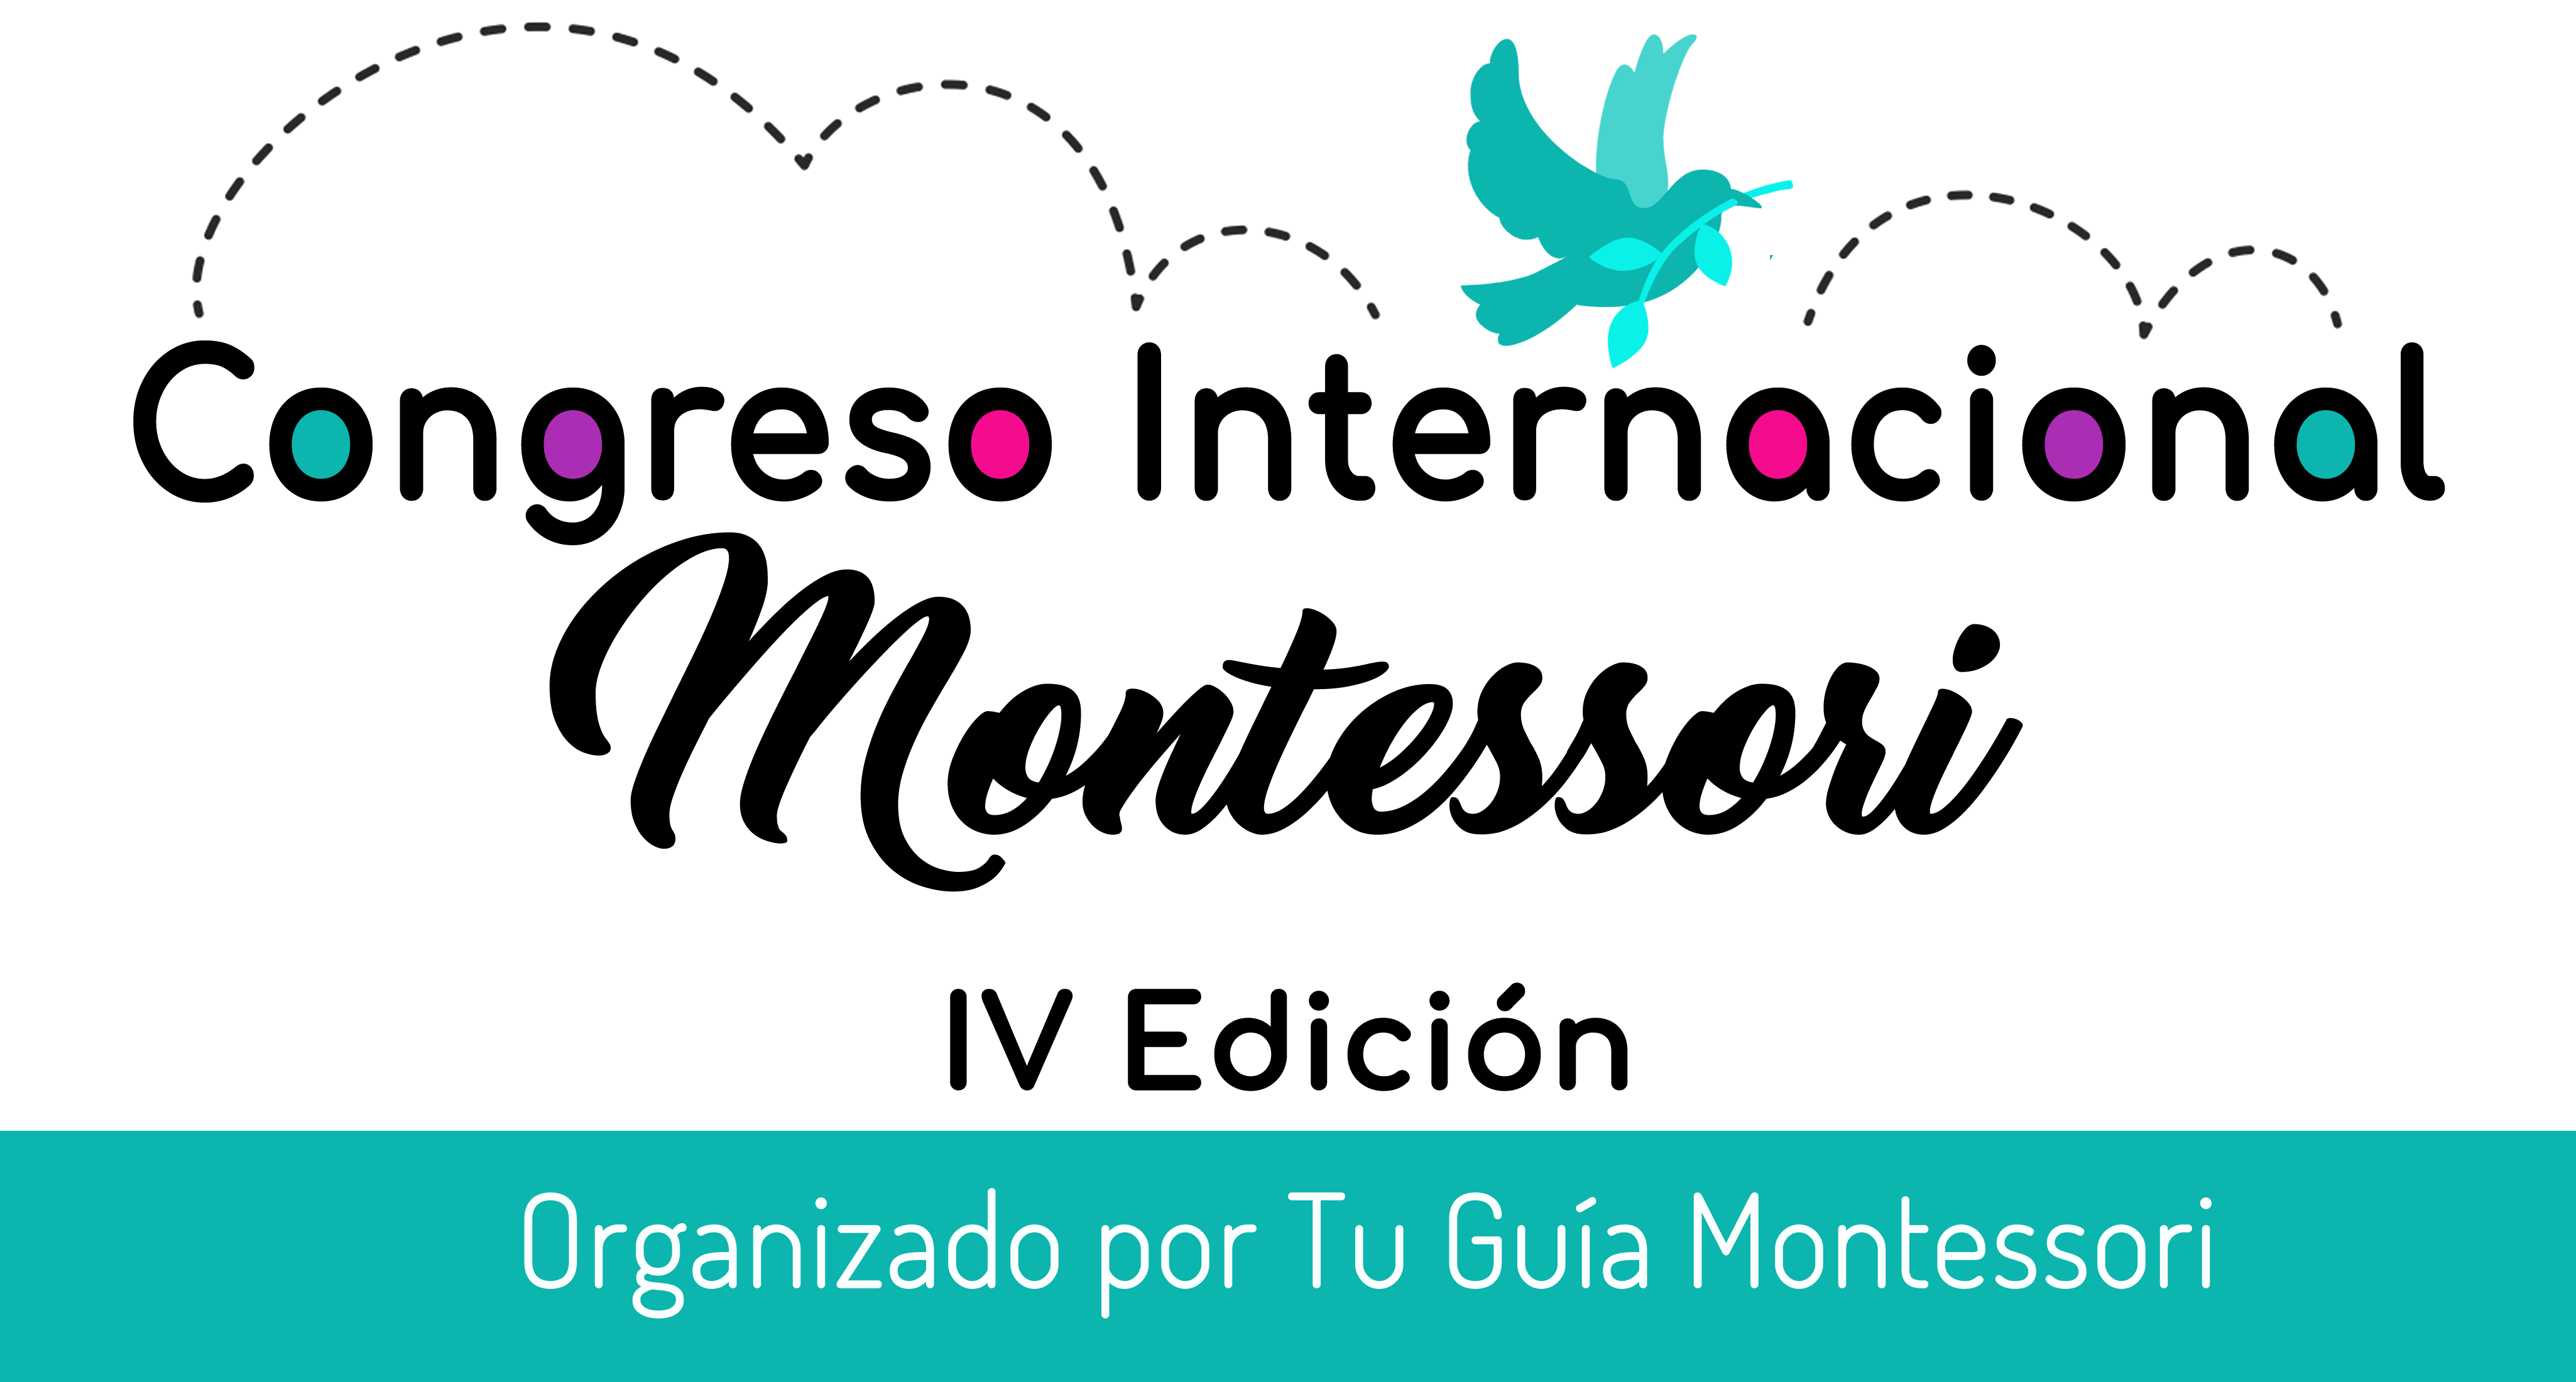 Ponentes de todo el mundo se dan cita para enseñarte sus conocimientos y destrezas en el Cuatro Congreso Internacional Montessori